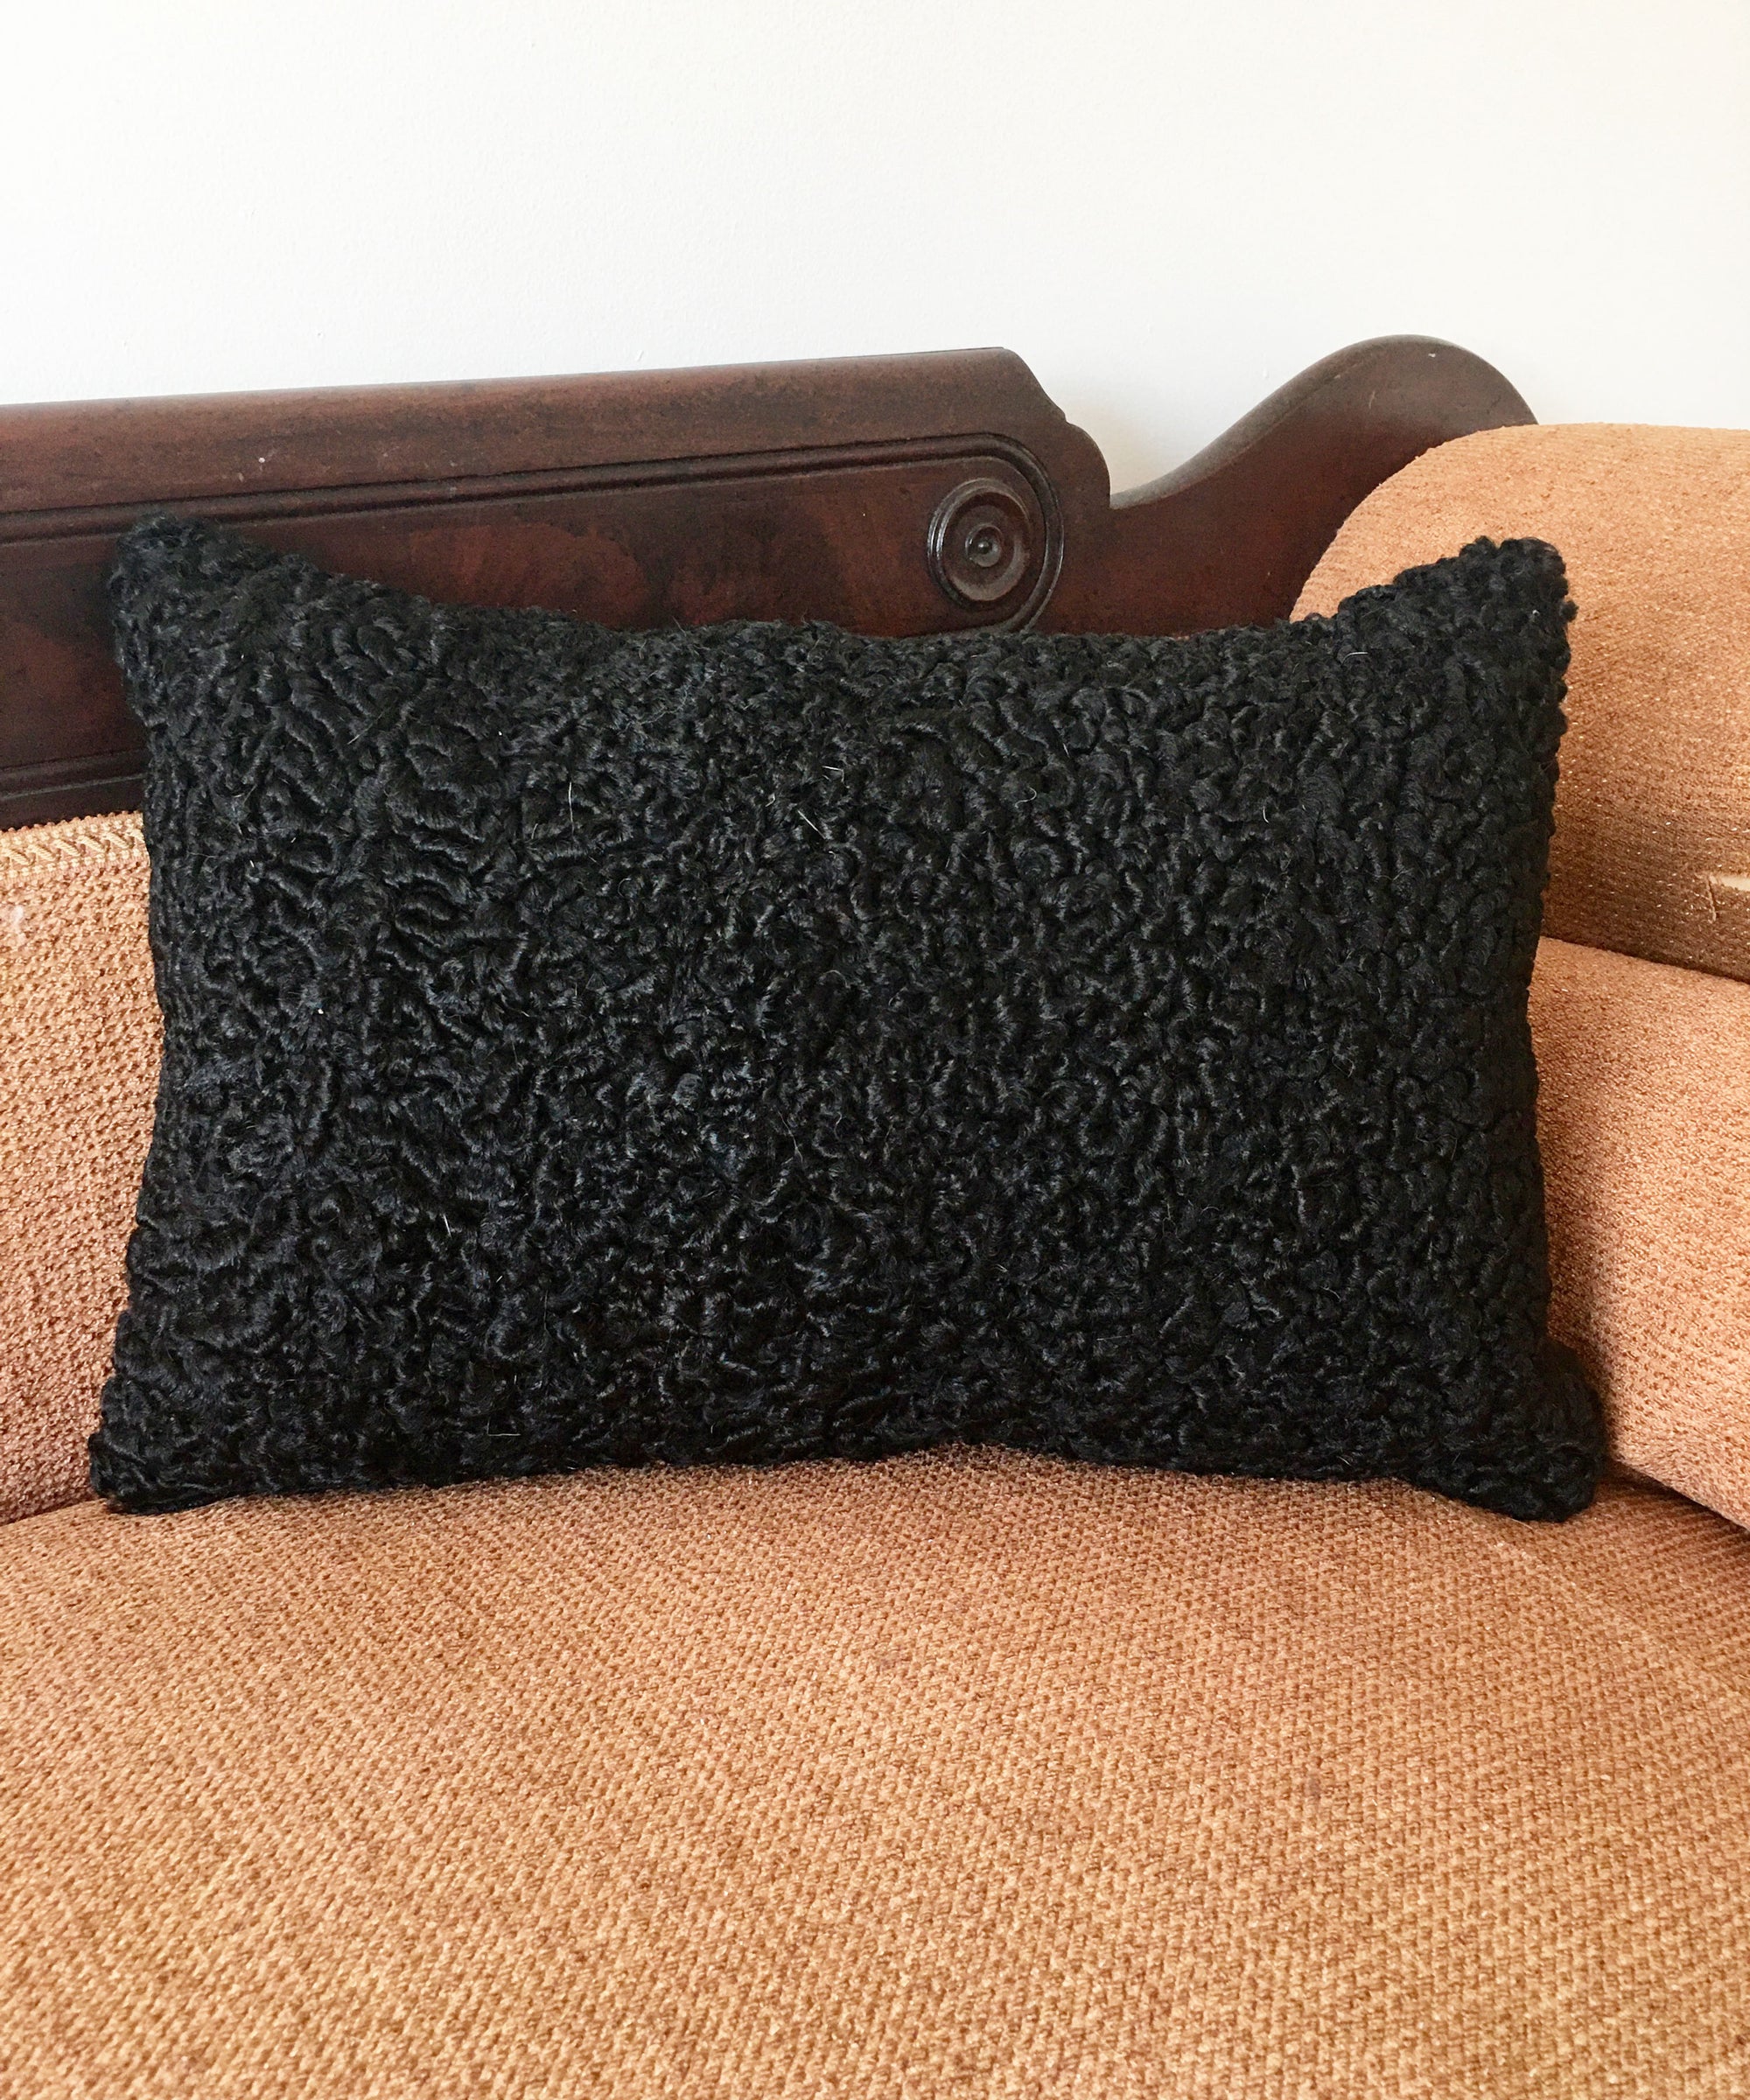 Reclaimed Black Persian Lamb Fur Pillow 13" x 19"